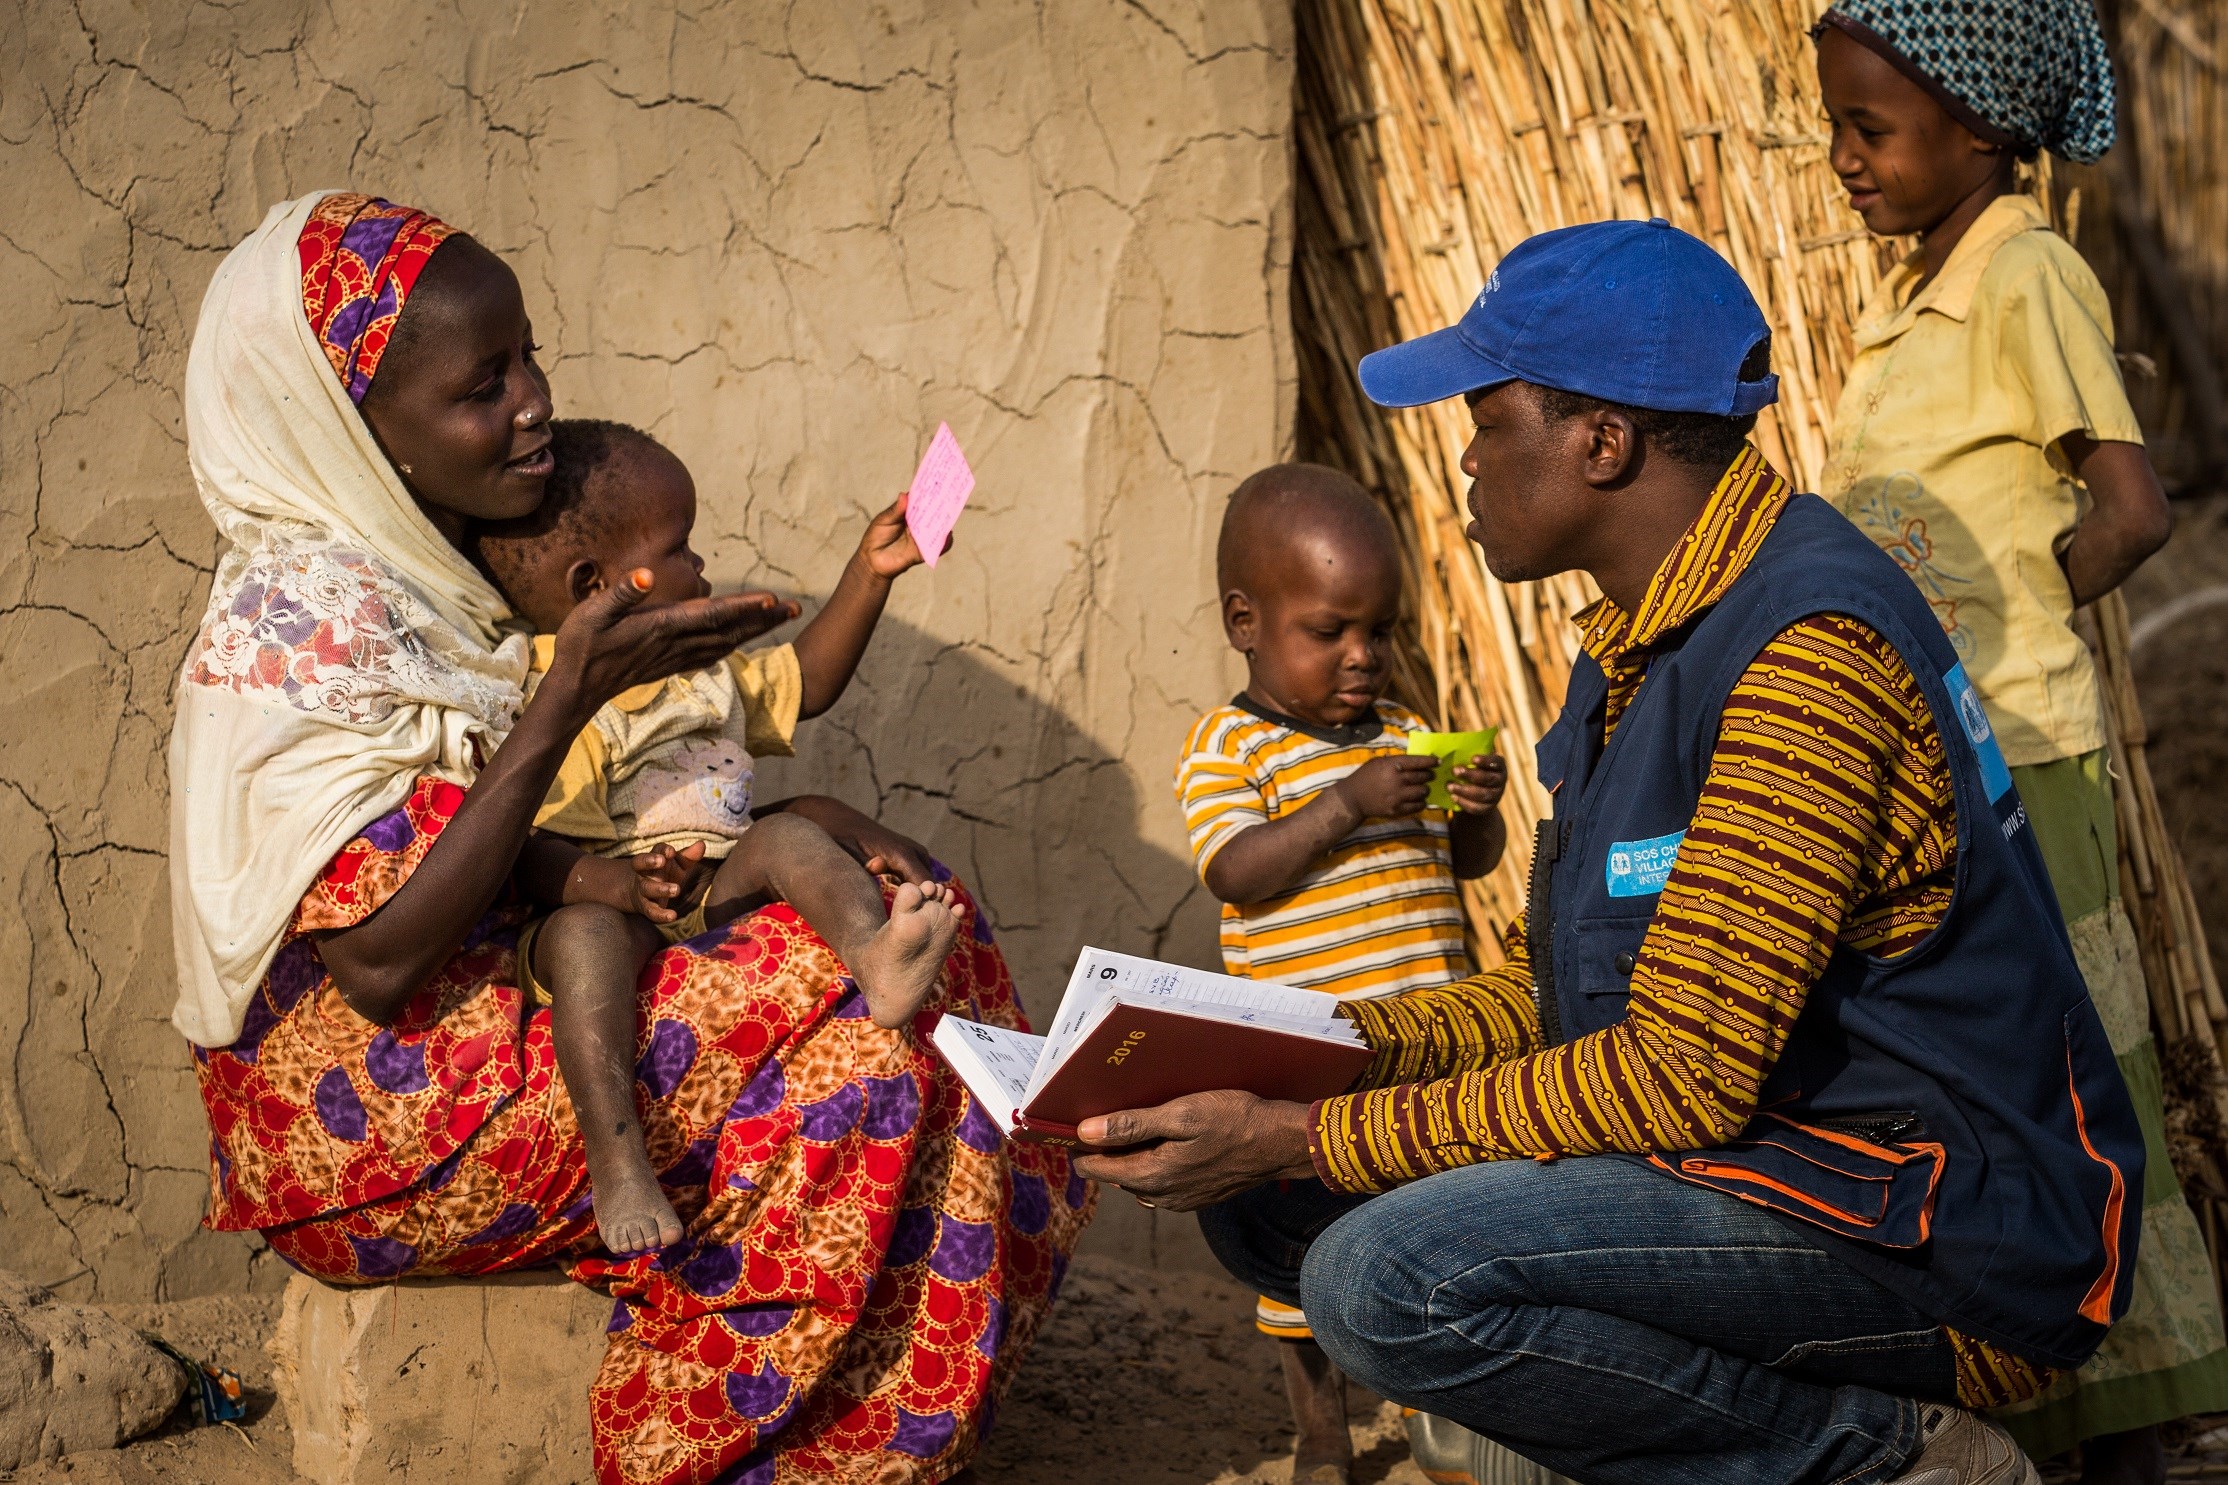 – Barn vil aller helst vokse opp i sin egen familie, og få kjærlighet og omsorg. Derfor må arbeidet starte der, sier Chrissie Gale.  Her fra SOS-barnebyers arbeid i Niger. FOTO: Vincent Tremeau